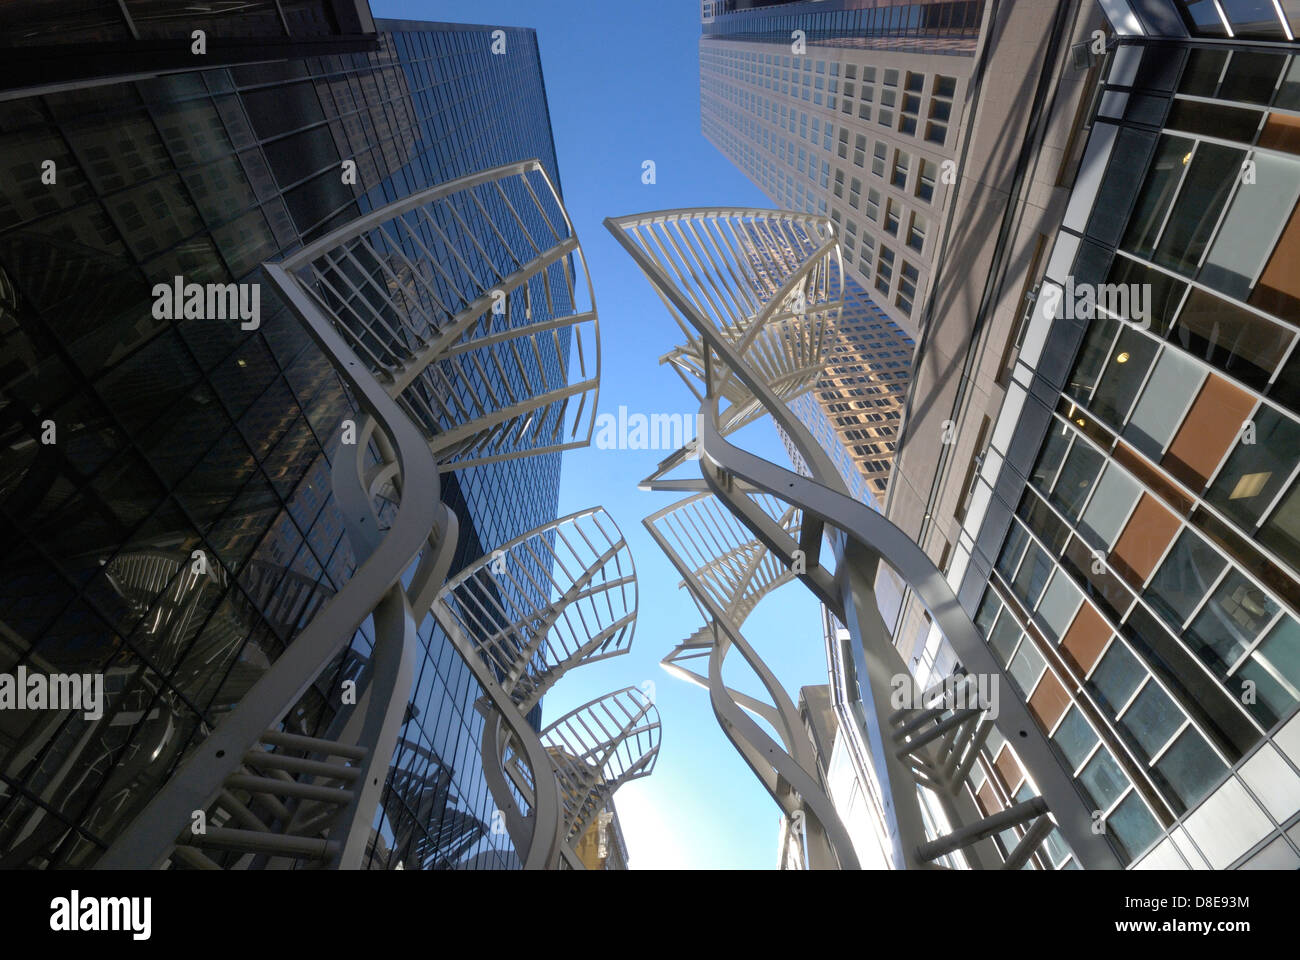 Bekannt als die "Bäume" von Stephen Walk, diese Stahlskulpturen in der Innenstadt von Calgary wurden entwickelt, um die Wirkung des Windes abzulenken. Stockfoto